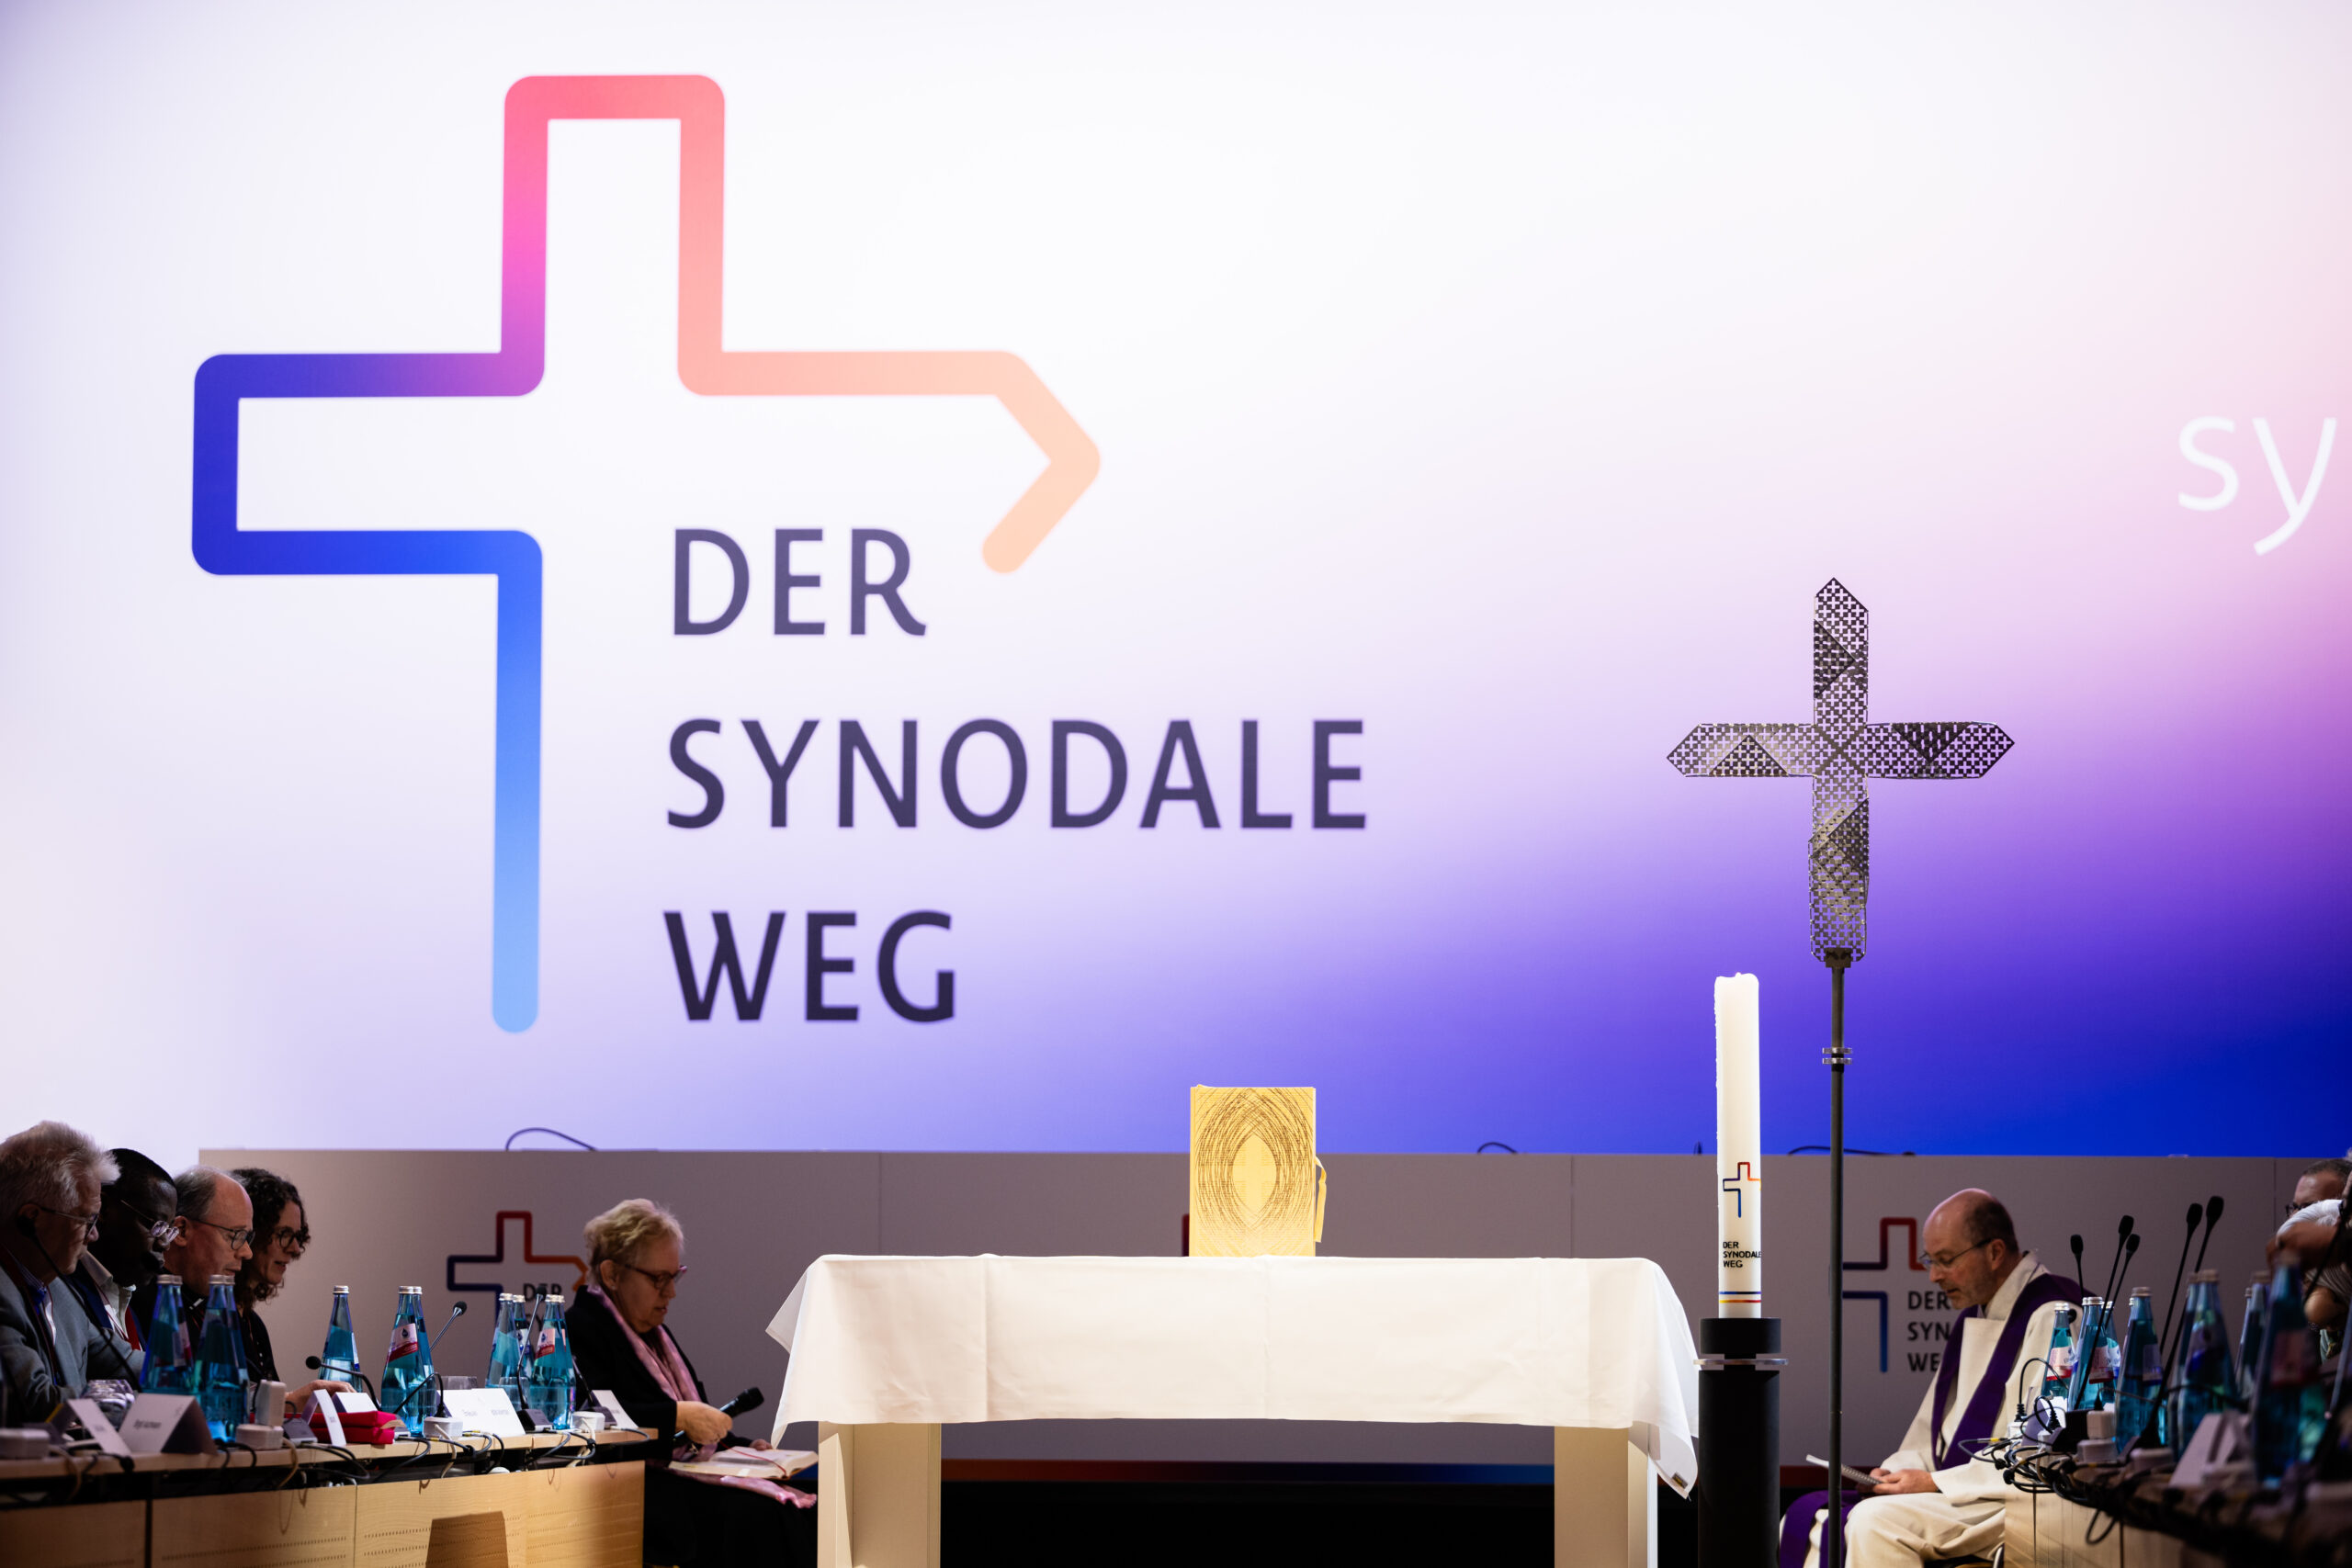 Das Foto zeigt die fünfte Synodalversammlung des Synodalen Wegs in Frankfurt: an die Wand ist das Logo des Synodalen Wegs projiziert, ddarunter sieht man ein Kreuz, eine Kerze und Teilnehmende.